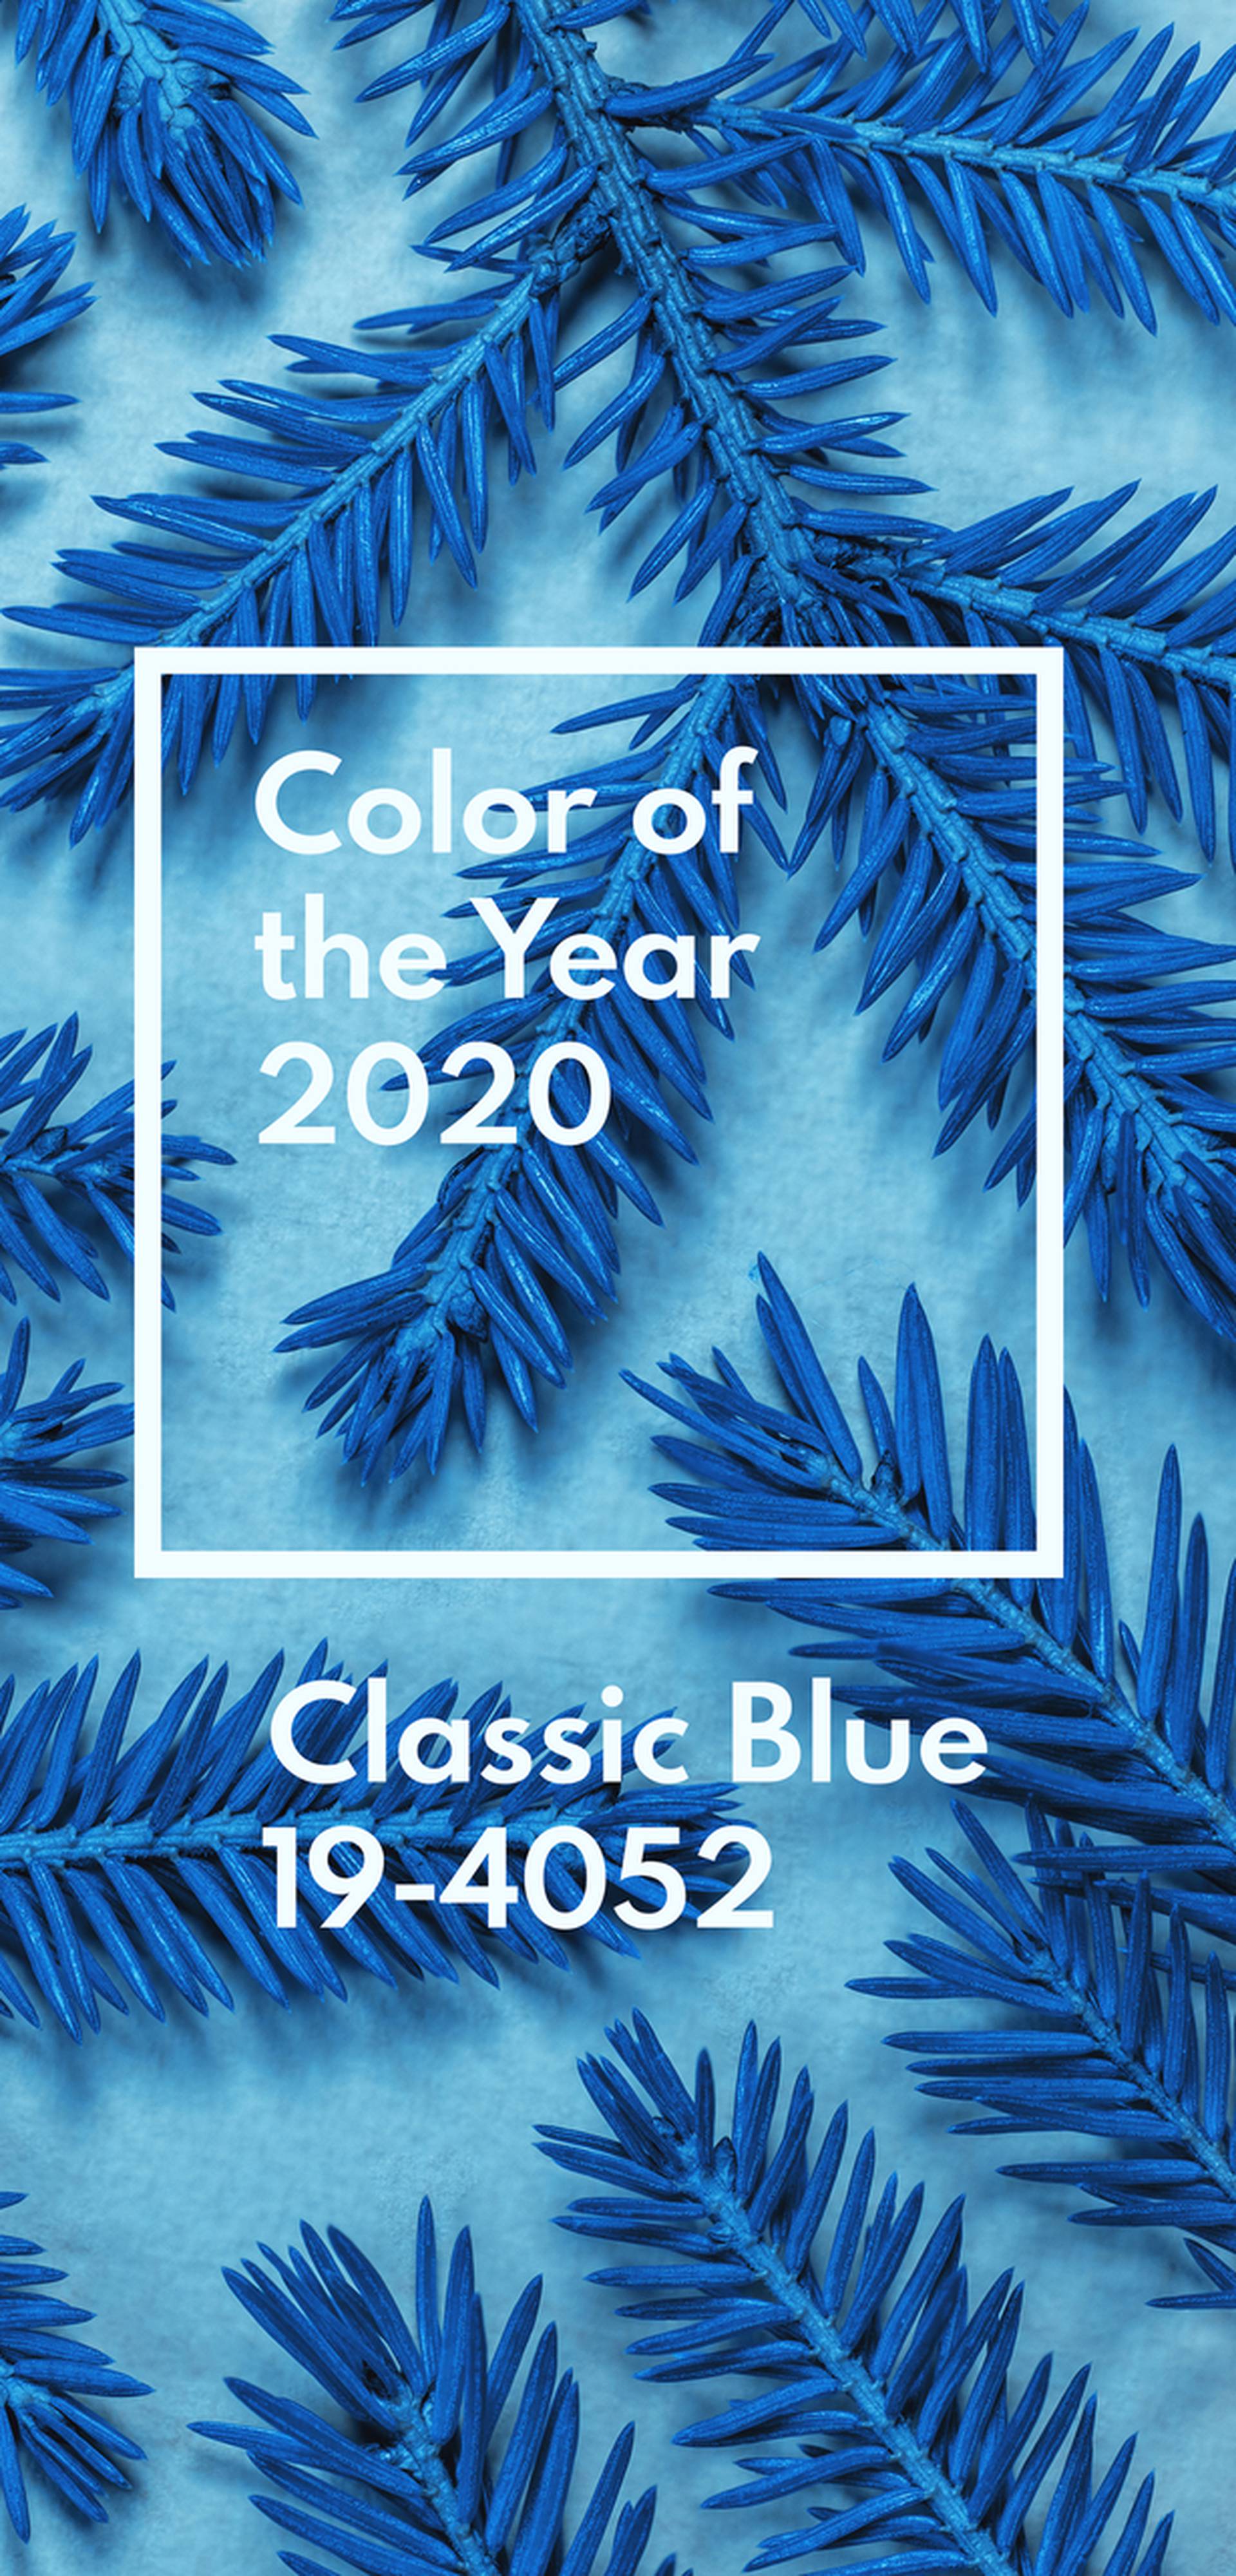 Pantone najavio boju za 2020. - obilježit će je 'klasična plava'